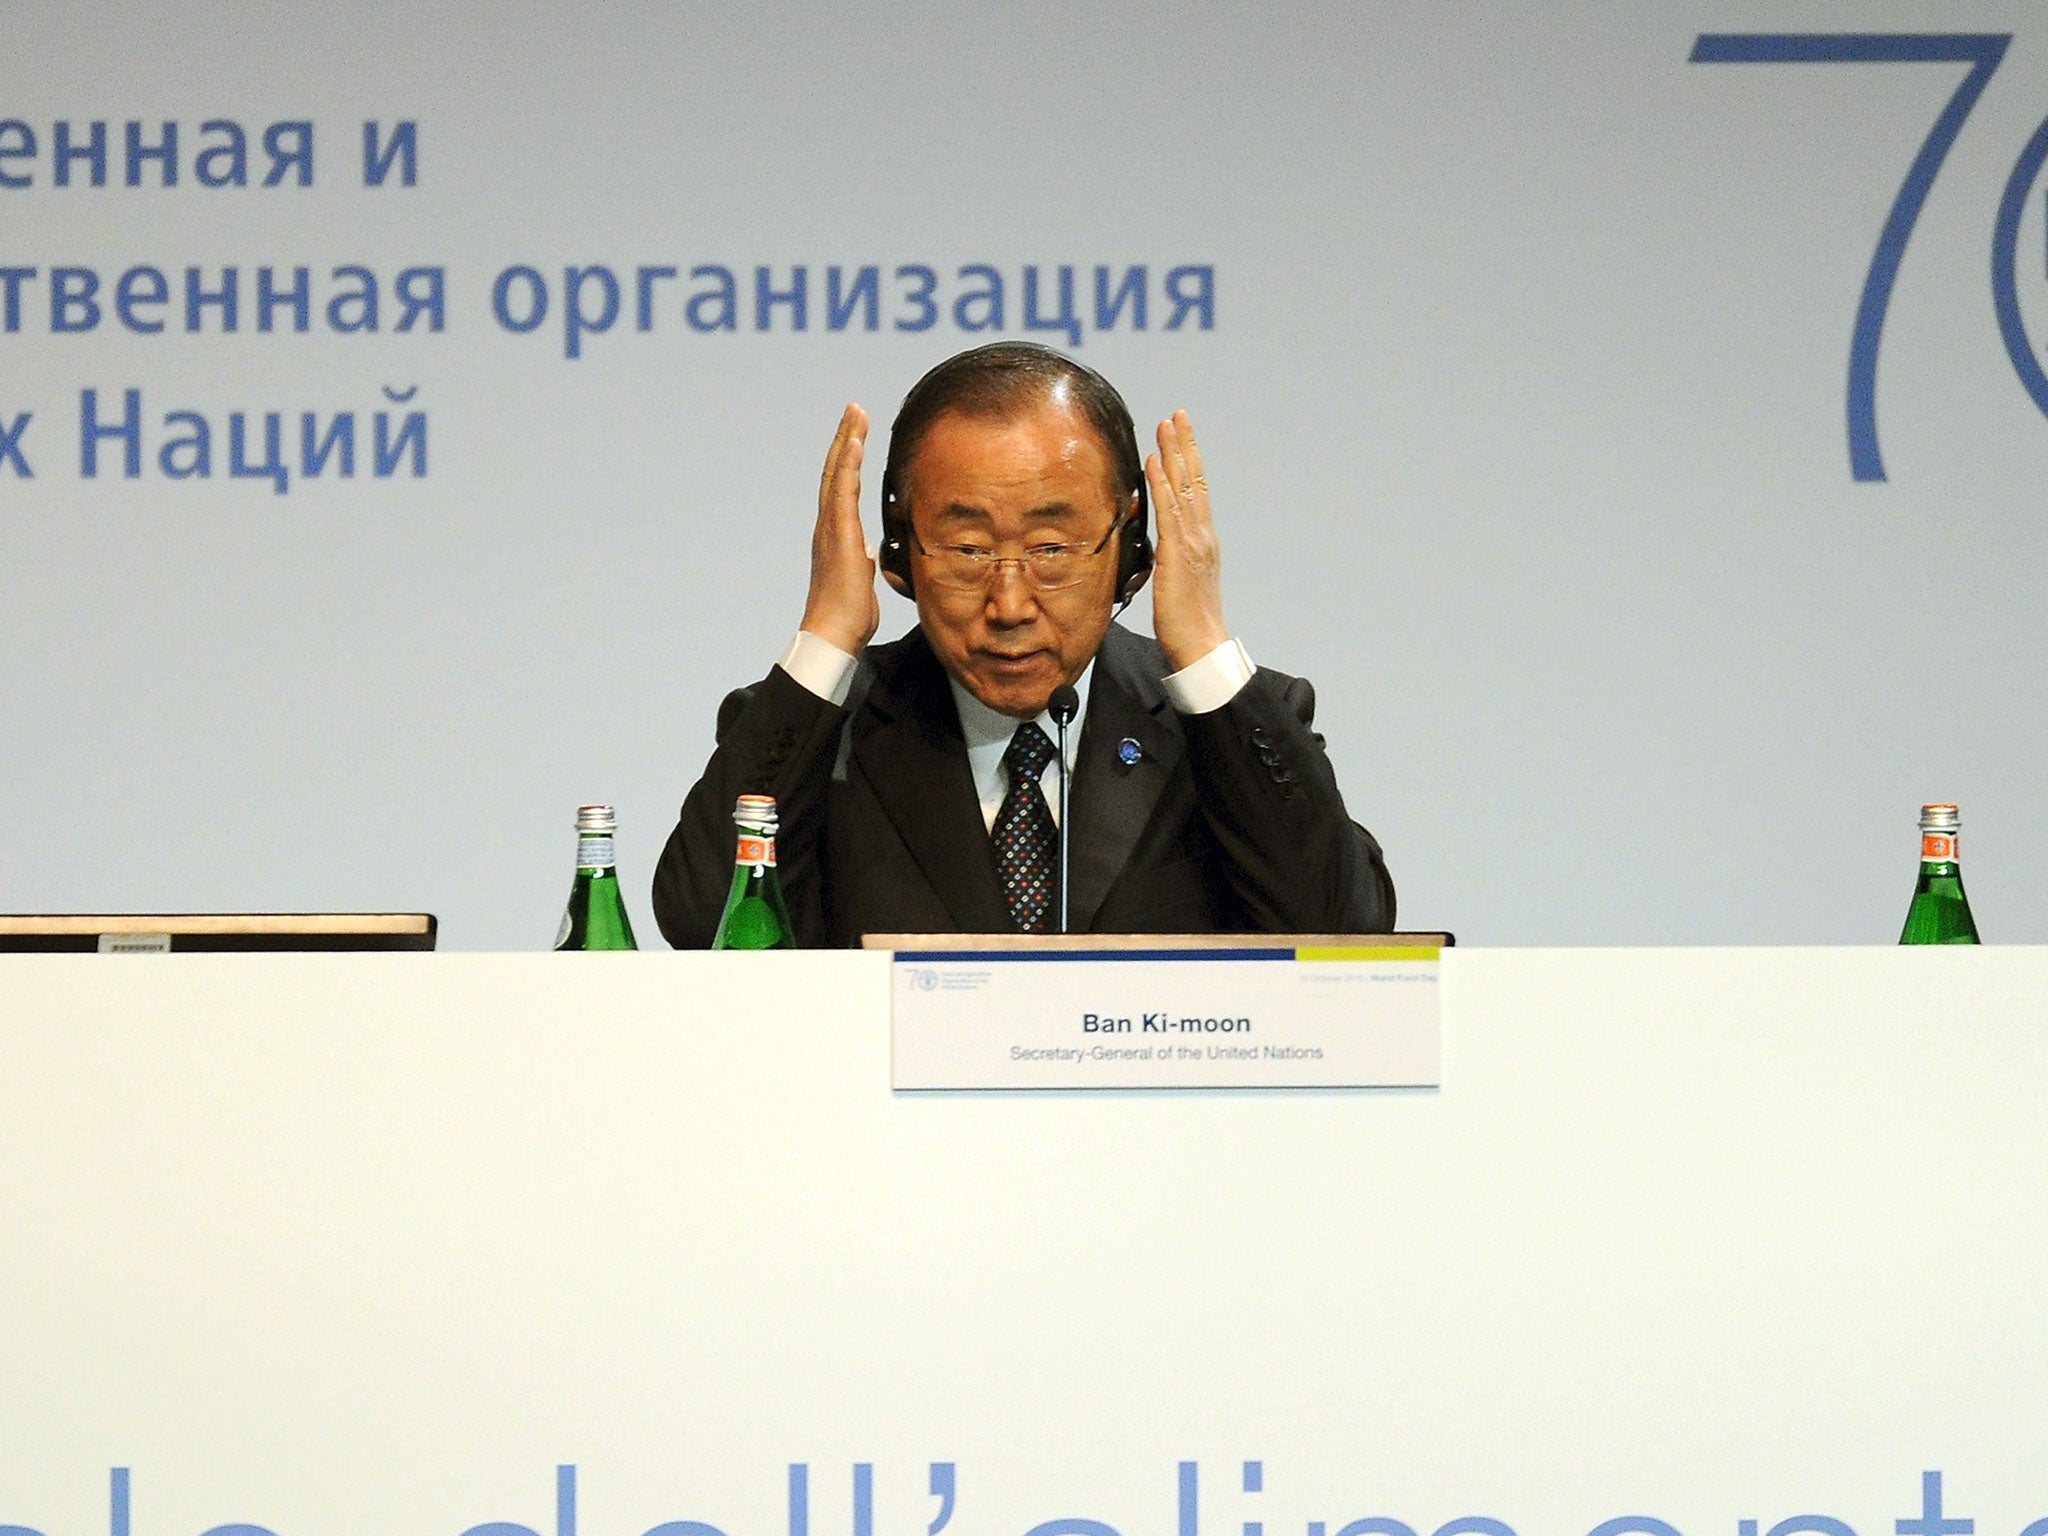 The UN Secretary-General, Ban Ki-moon